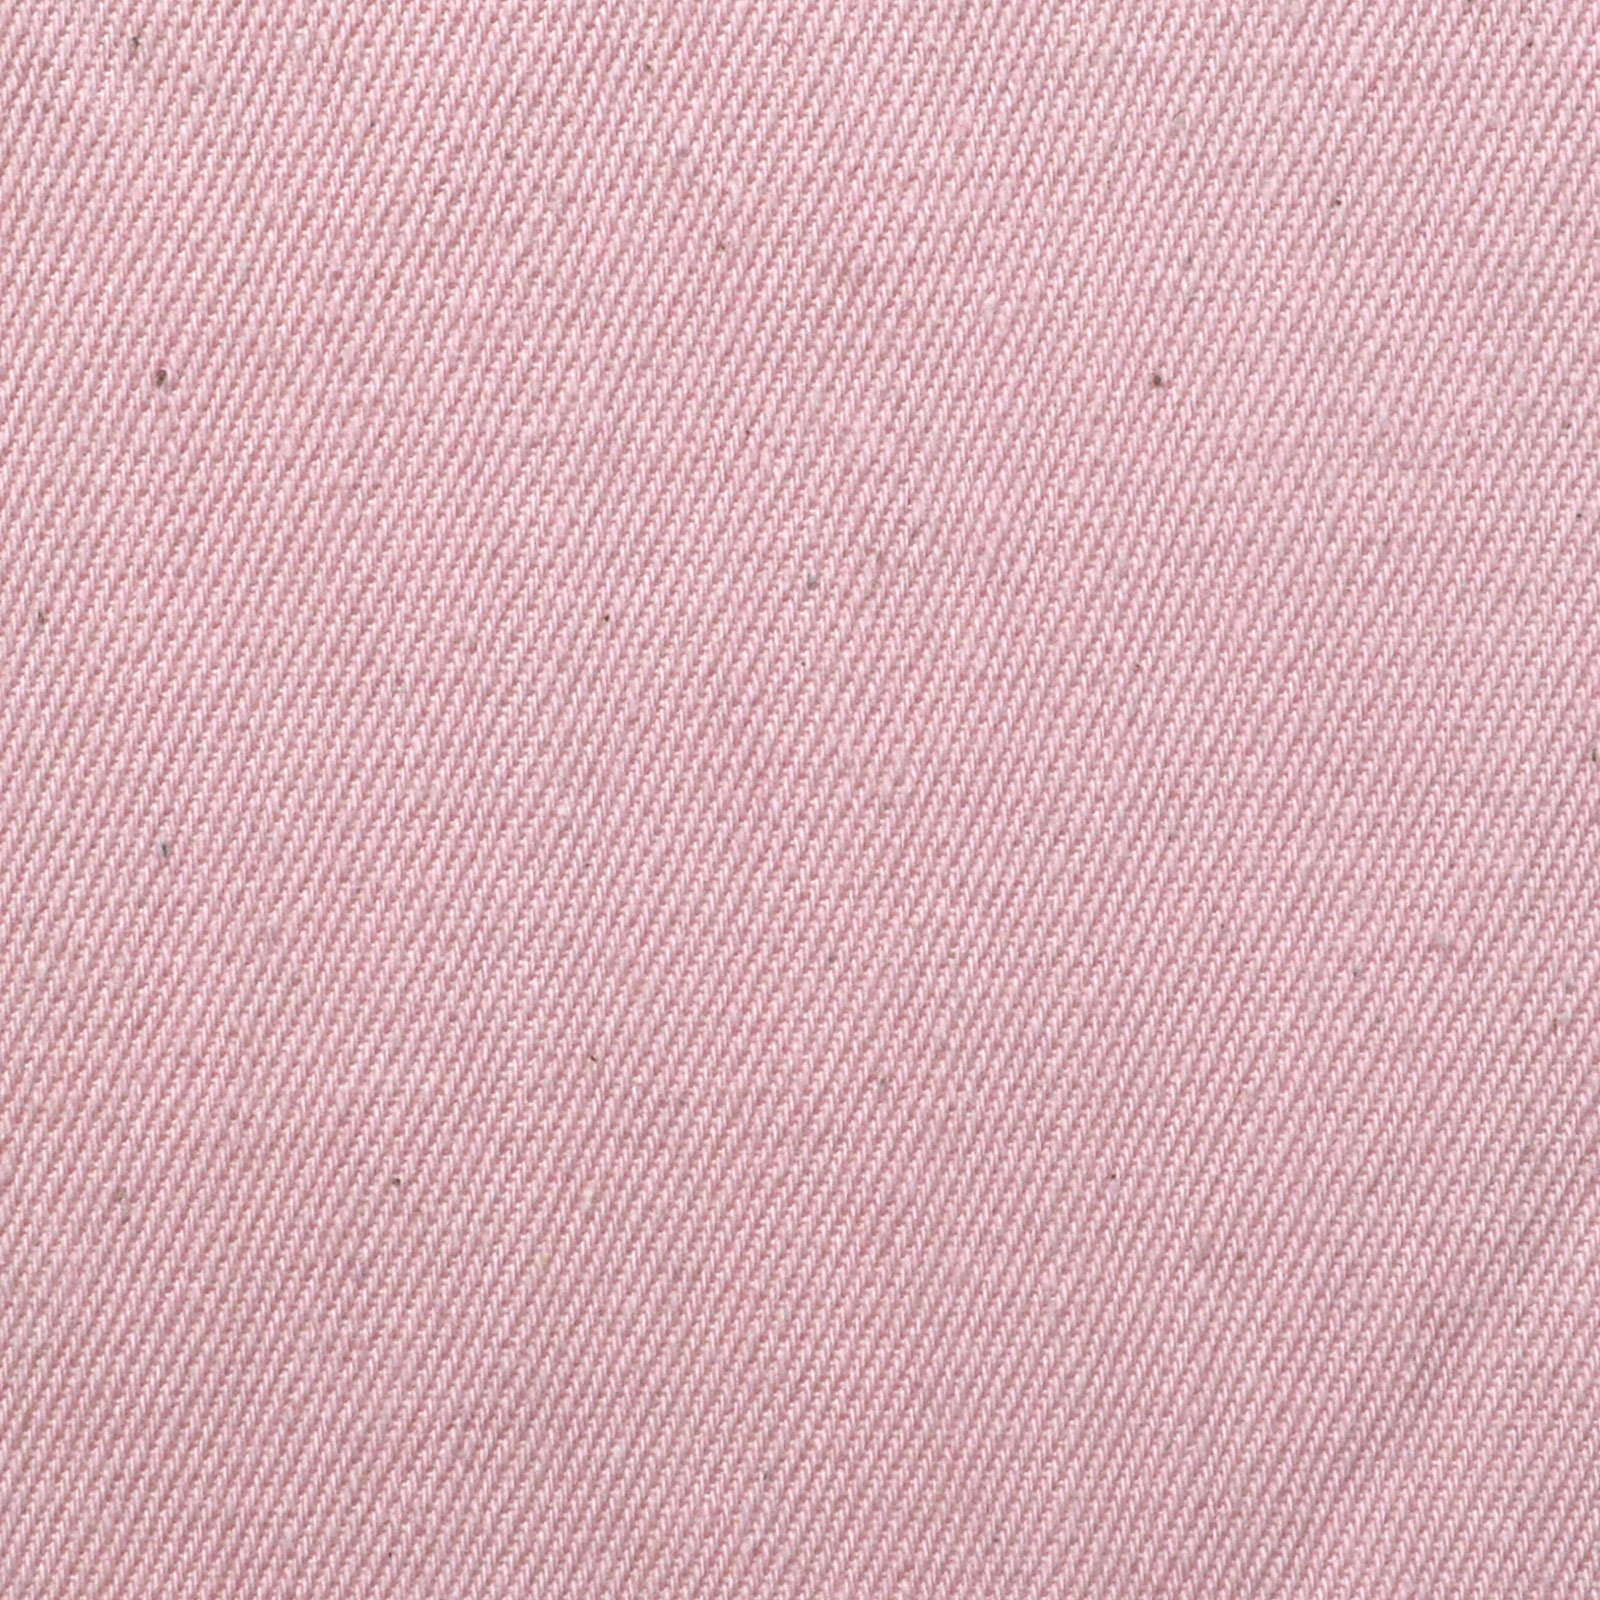 Medium Weight Handloom Selvedge Denim 6.5 Oz - Light Pink - Reactive Dye